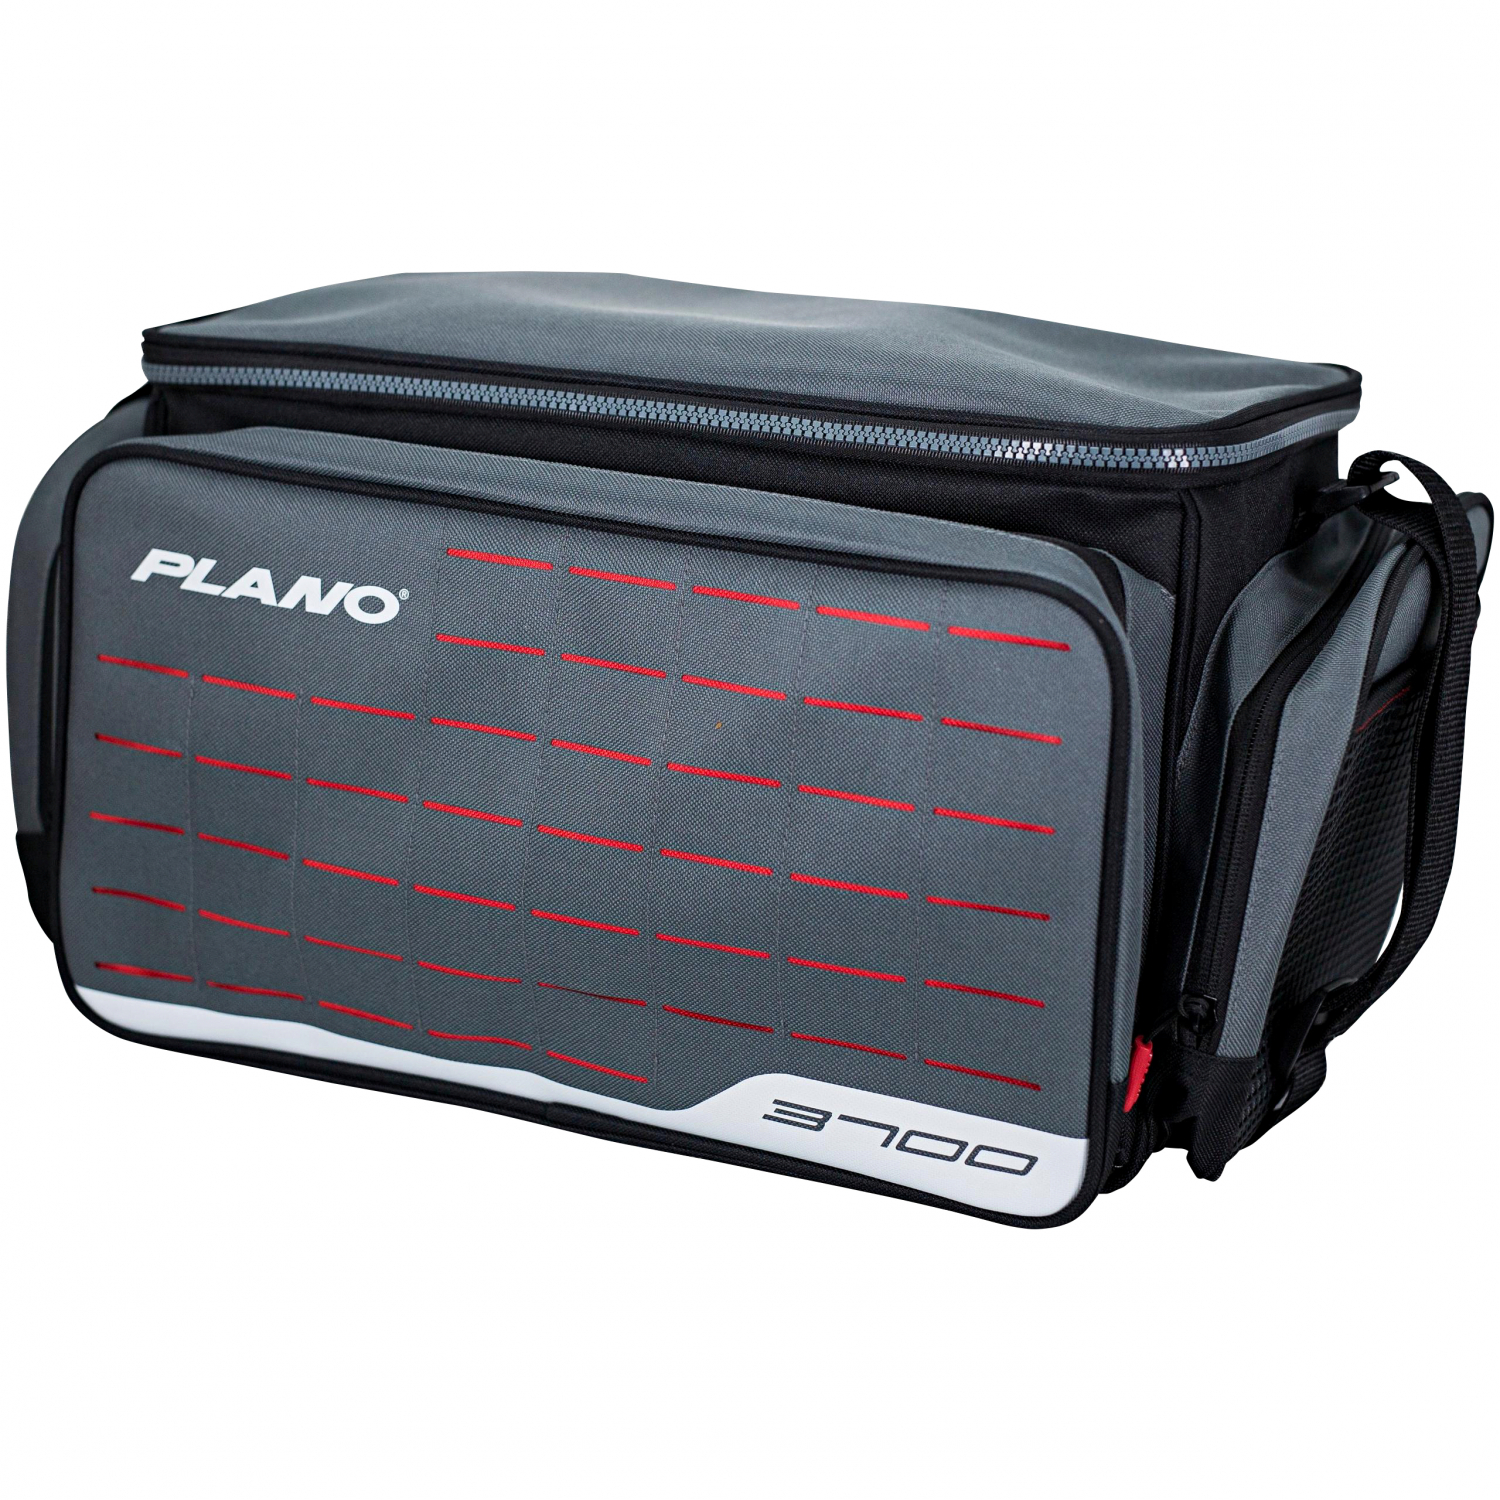 Plano Schießstandtasche X2™ Range Bag Medium günstig kaufen - Askari  Jagd-Shop